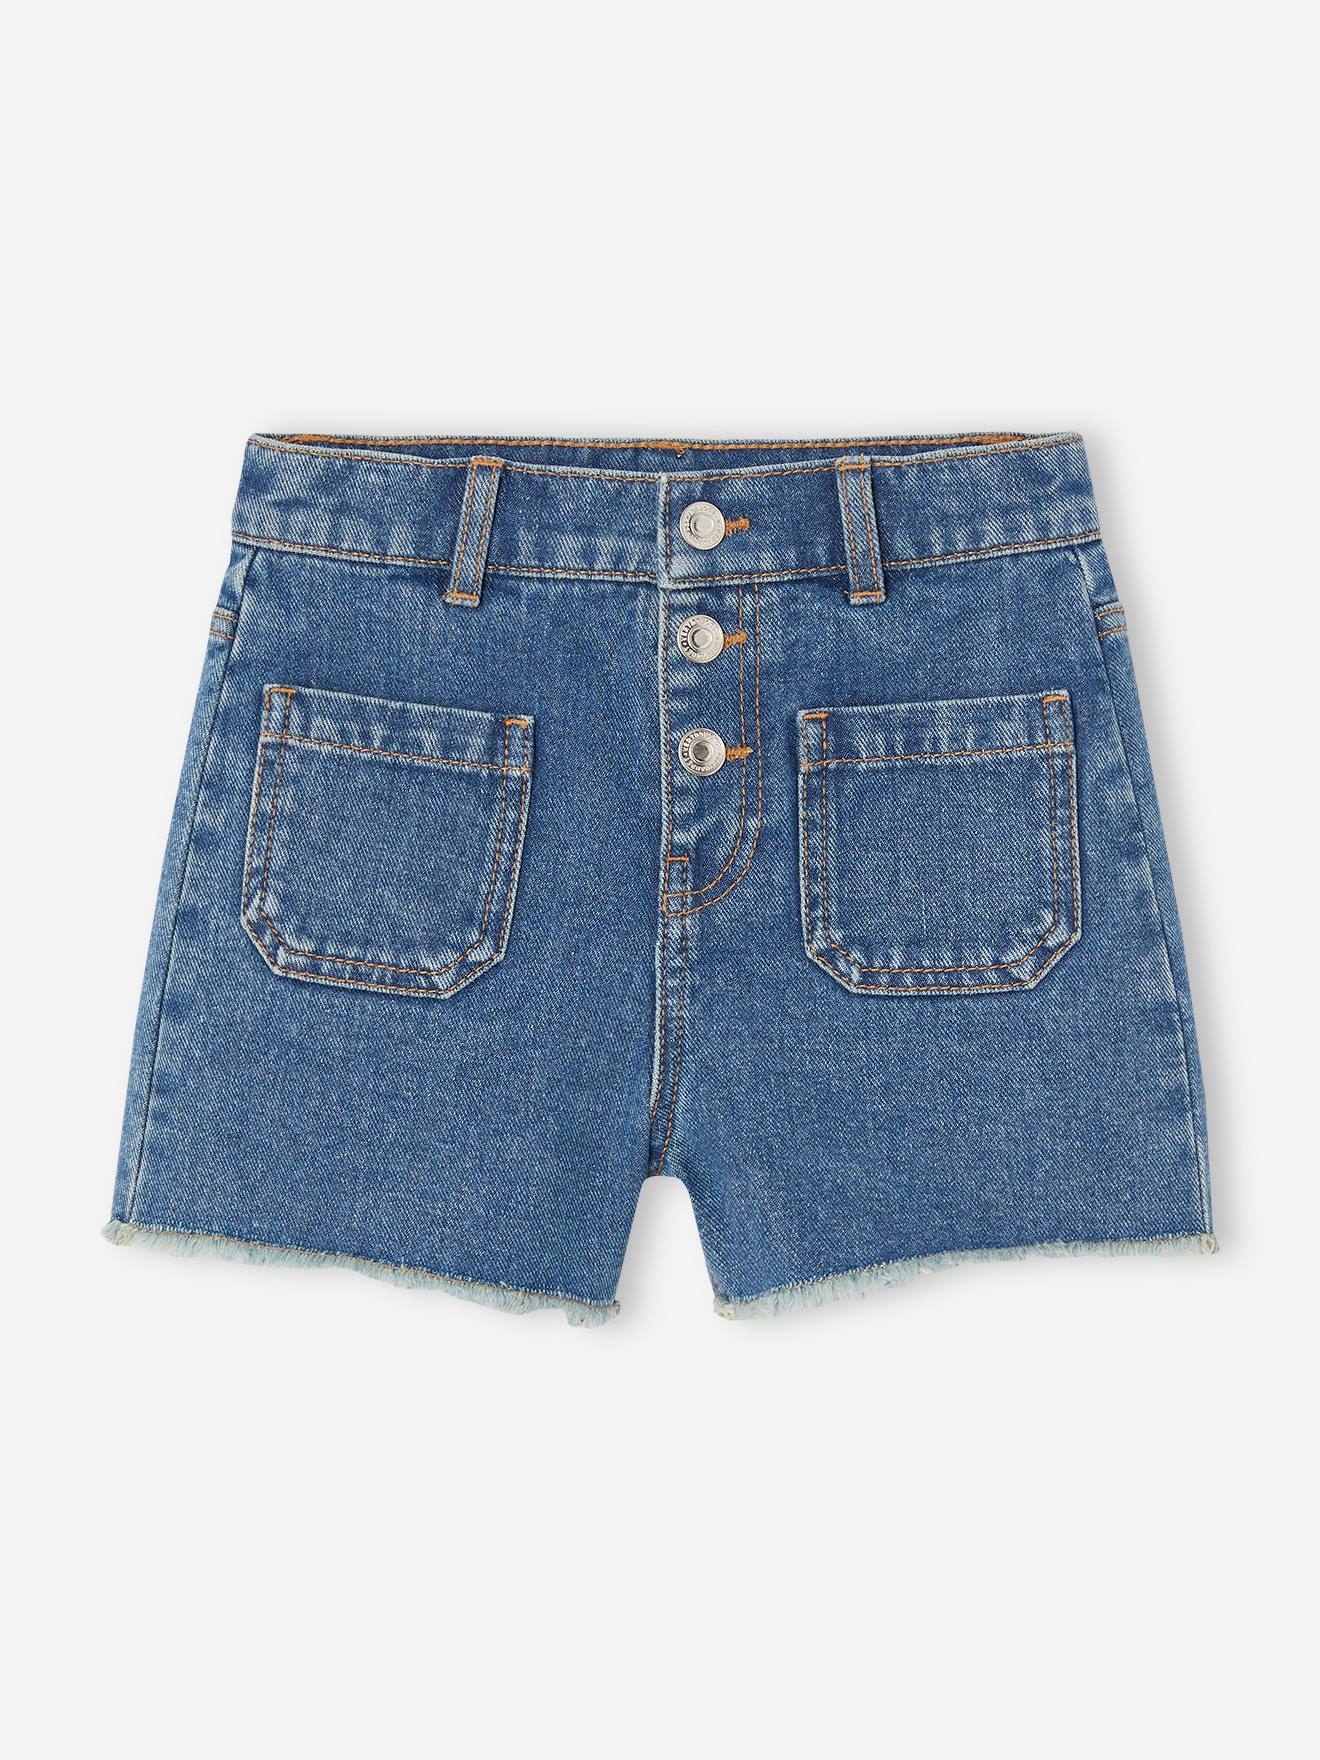 Mädchen Jeans-Shorts von Vertbaudet